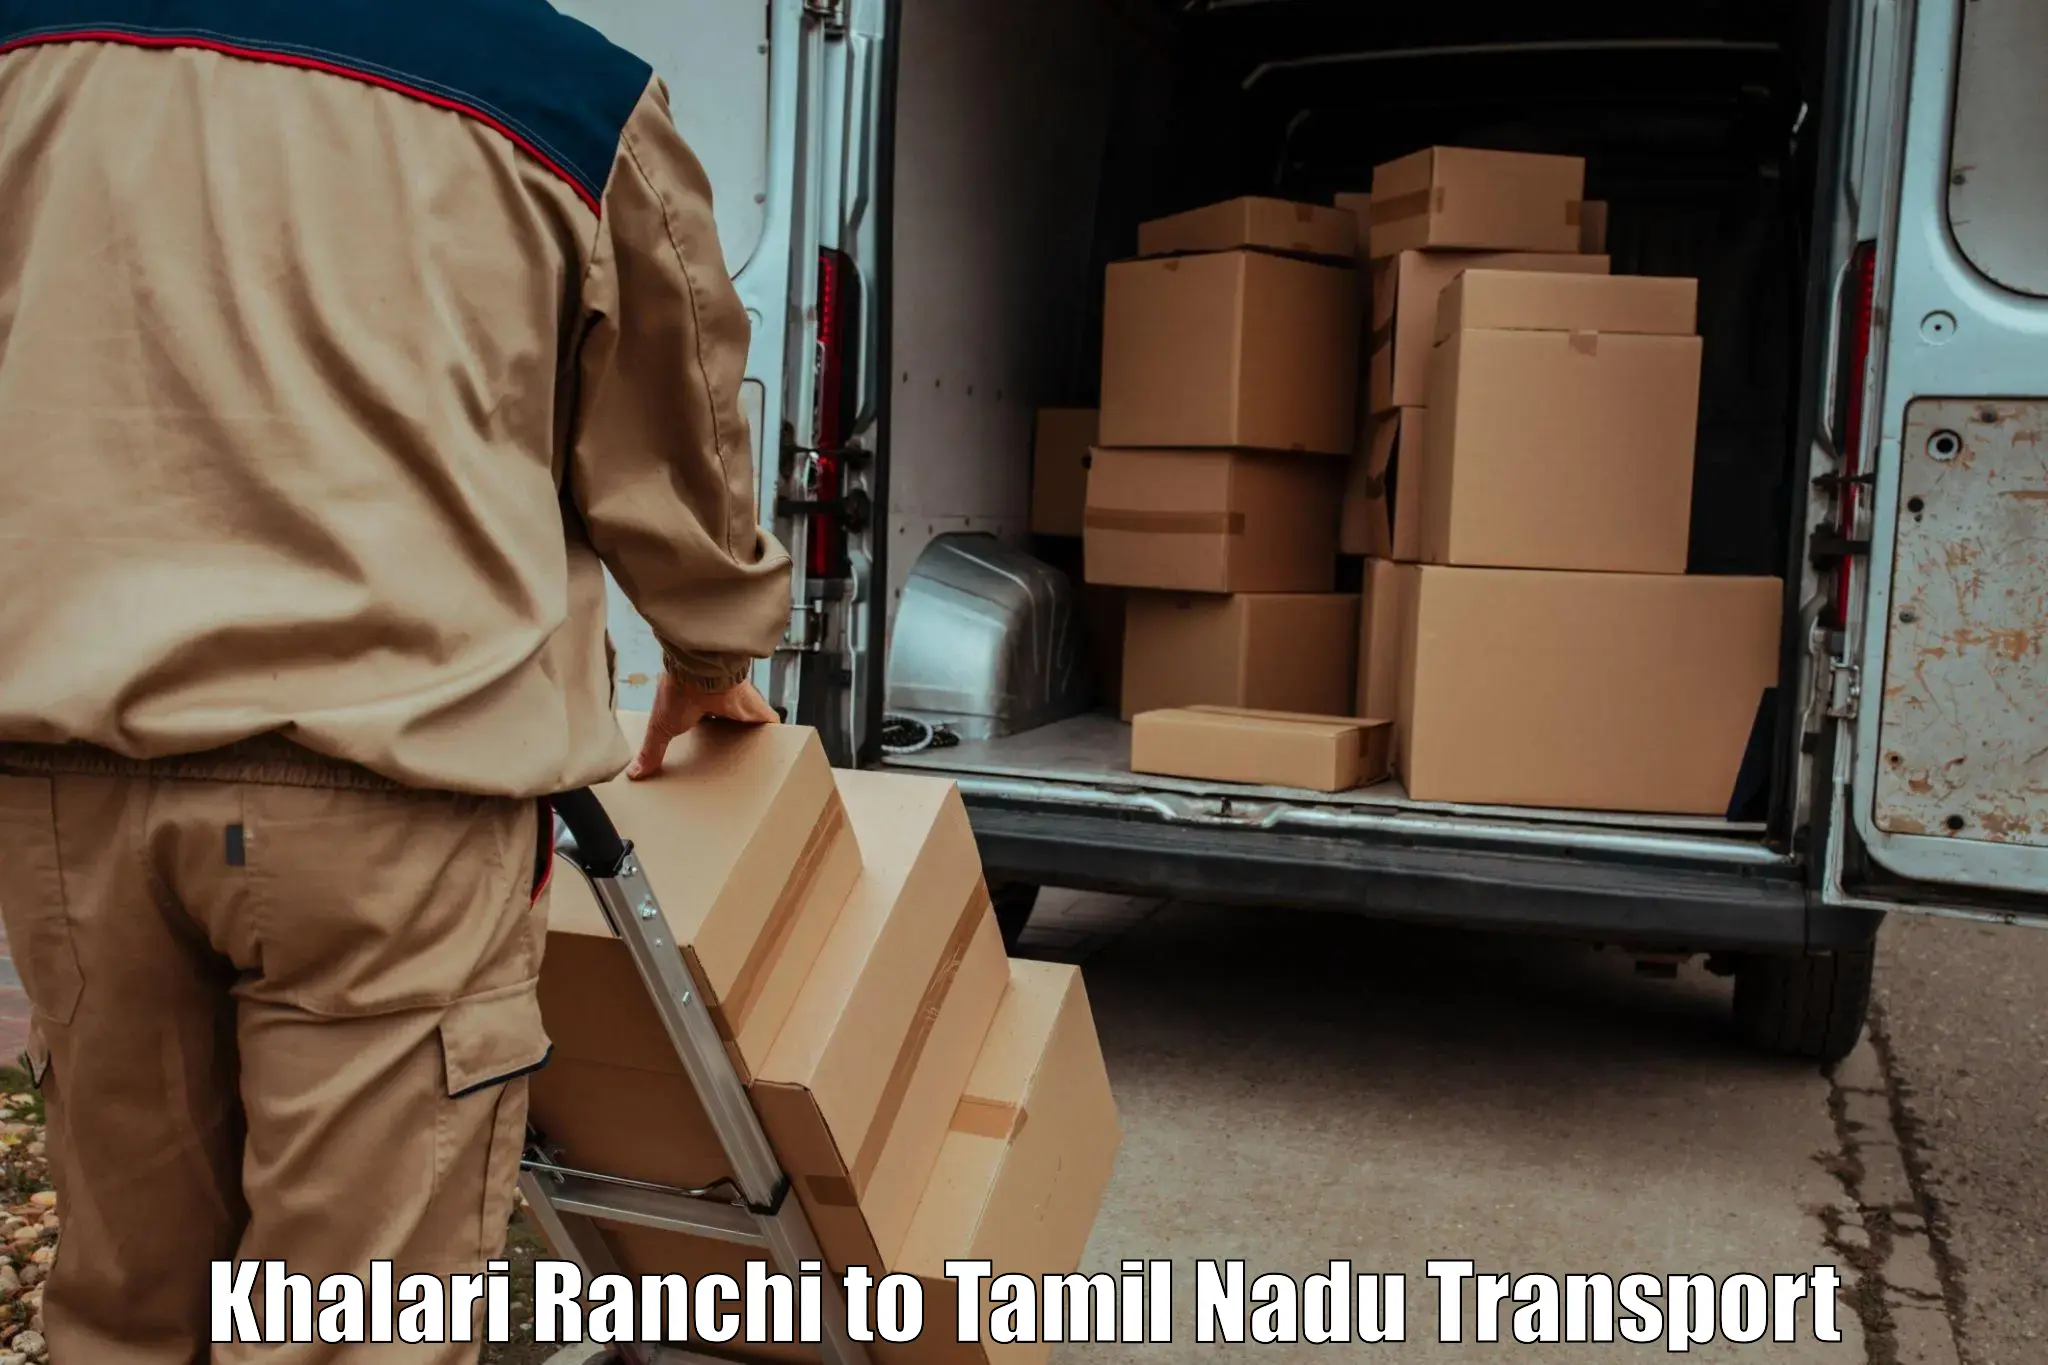 Parcel transport services Khalari Ranchi to Pushpavanam